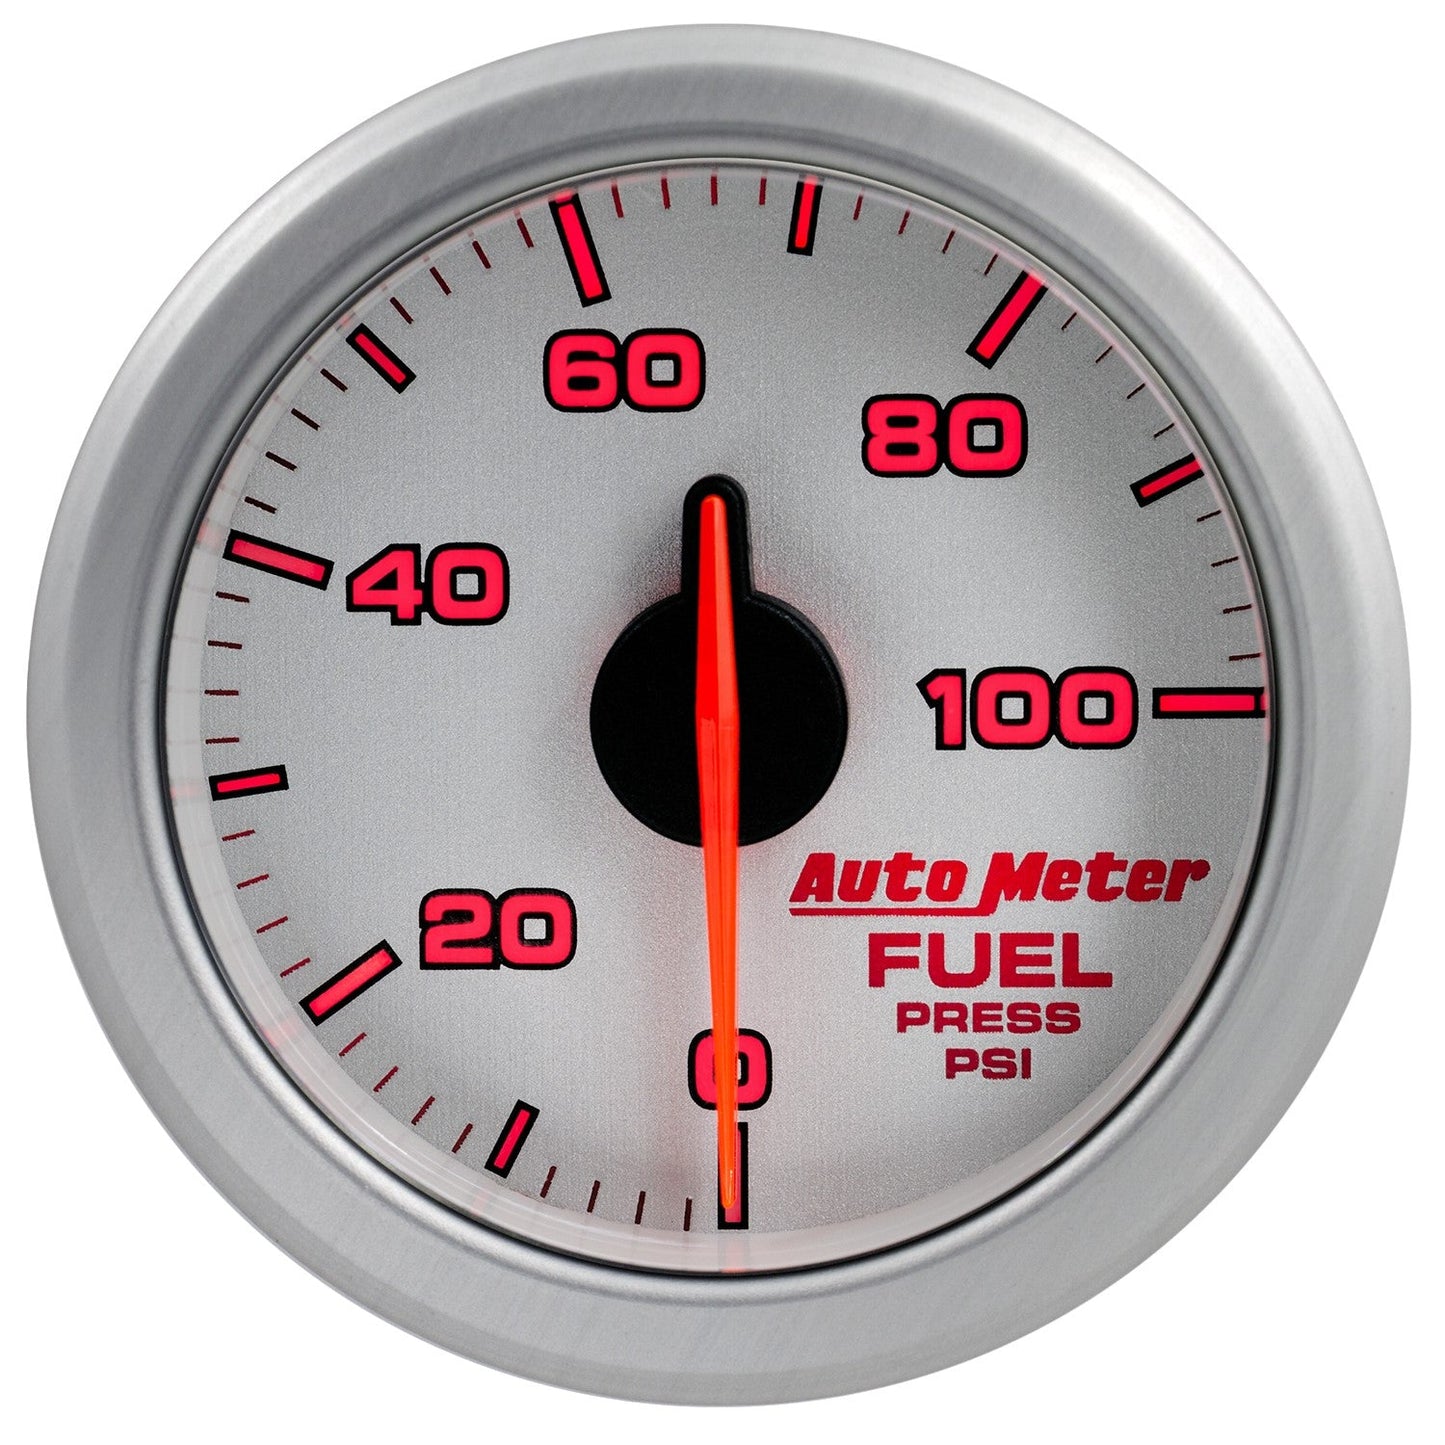 AutoMeter - PRENSA DE COMBUSTIBLE DE 2-1/16", 0-100 PSI, NÚCLEO DE AIRE, ACCIONAMIENTO POR AIRE, PLATA (9171-UL) 